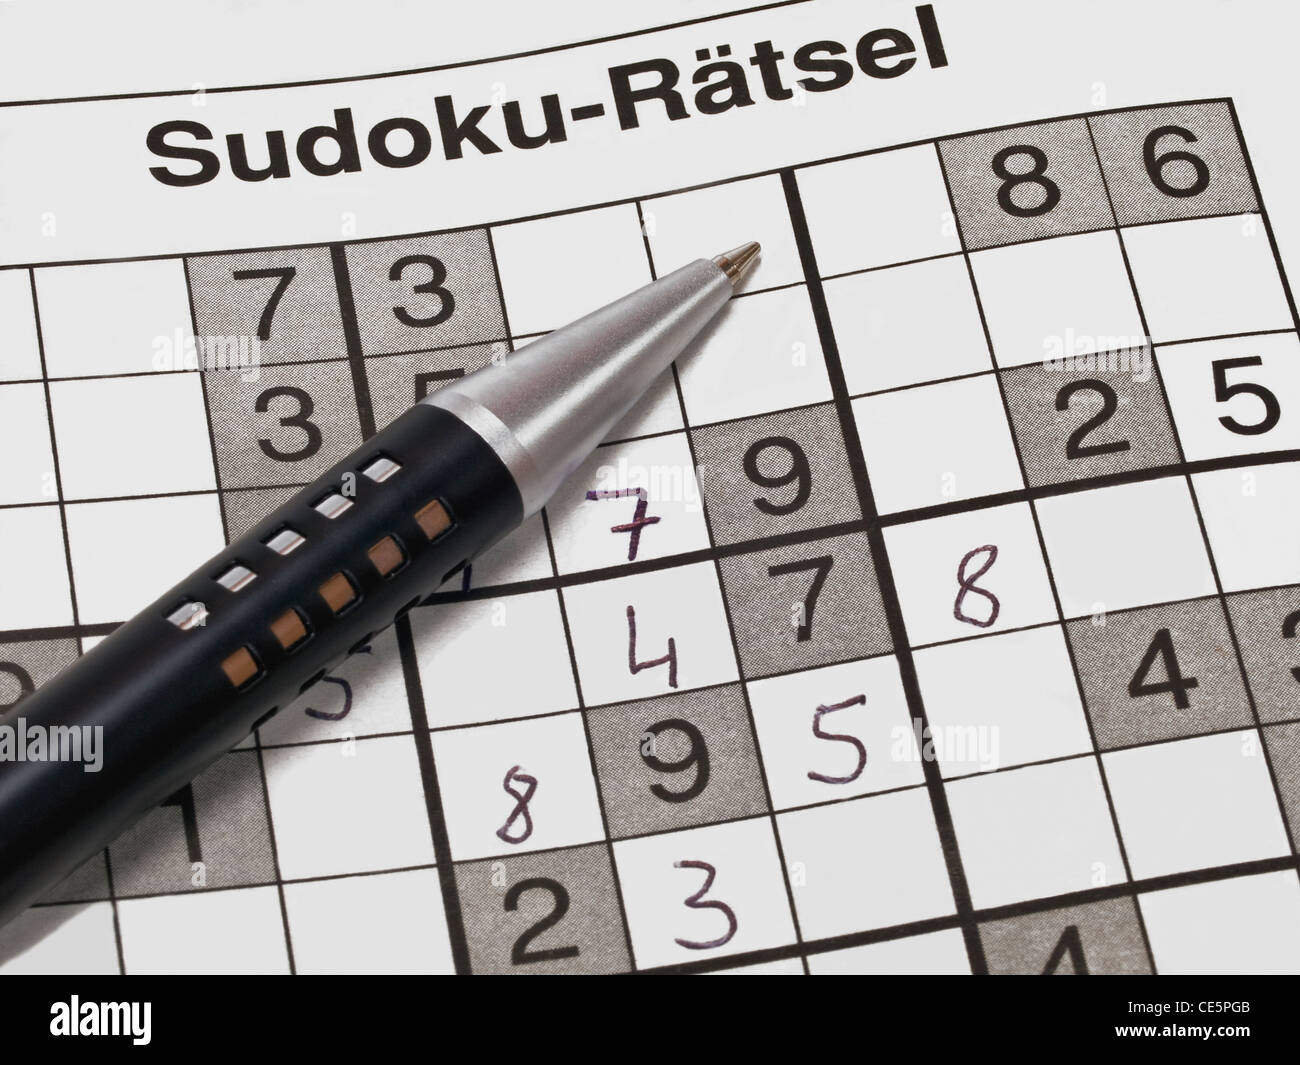 Detailansicht SUDOKU-und dabei Rätsels, liegt ein Stift | photo détail d'un sudoku-devinette, à côté est un stylo Banque D'Images